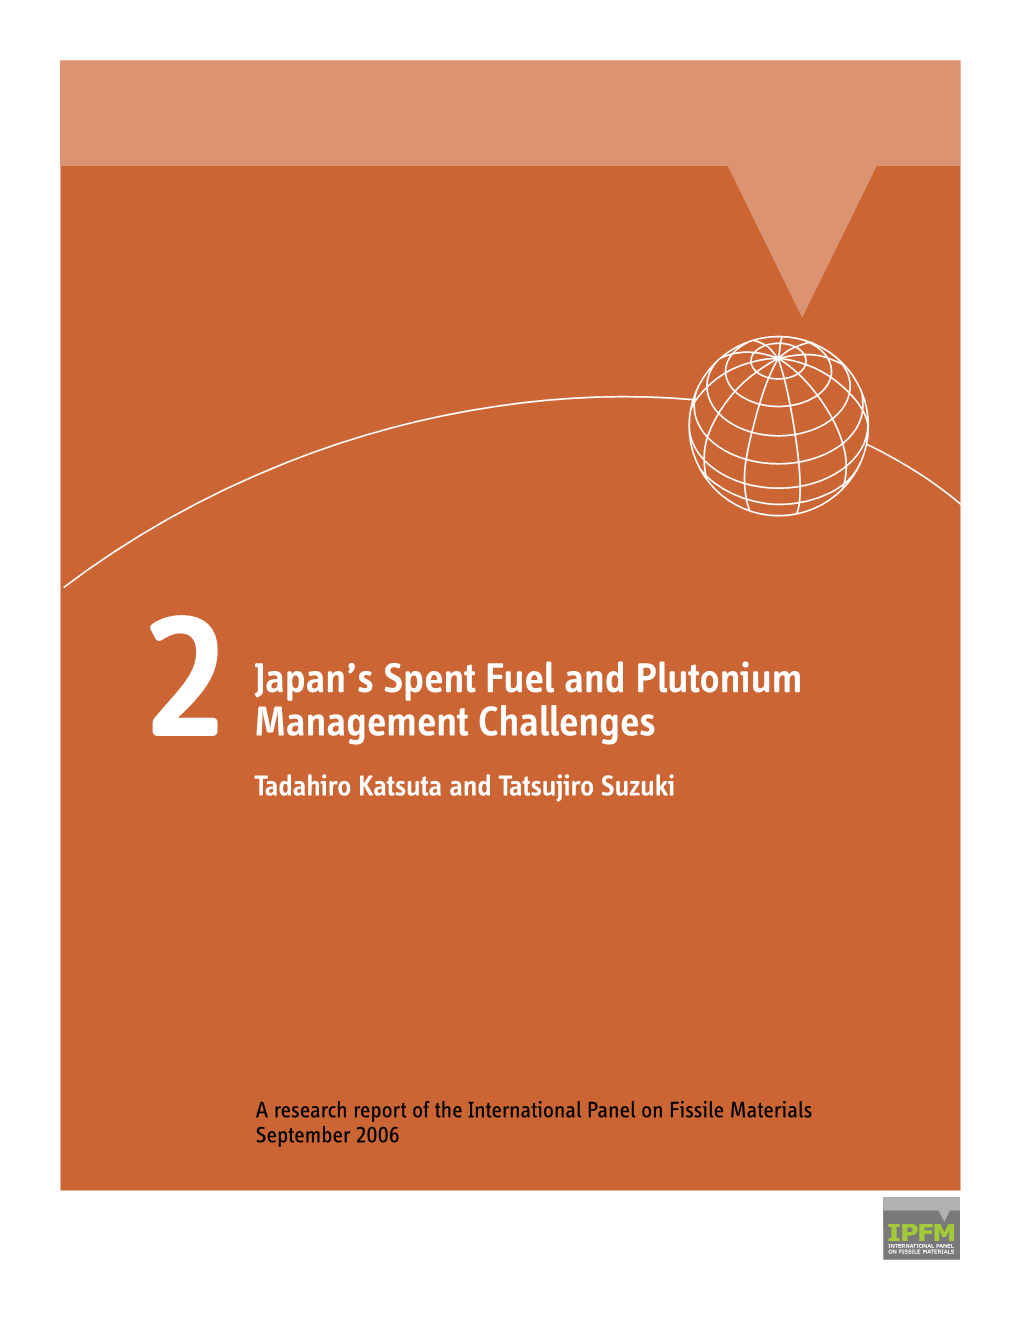 Japan's Spent Fuel and Plutonium Management Challenges